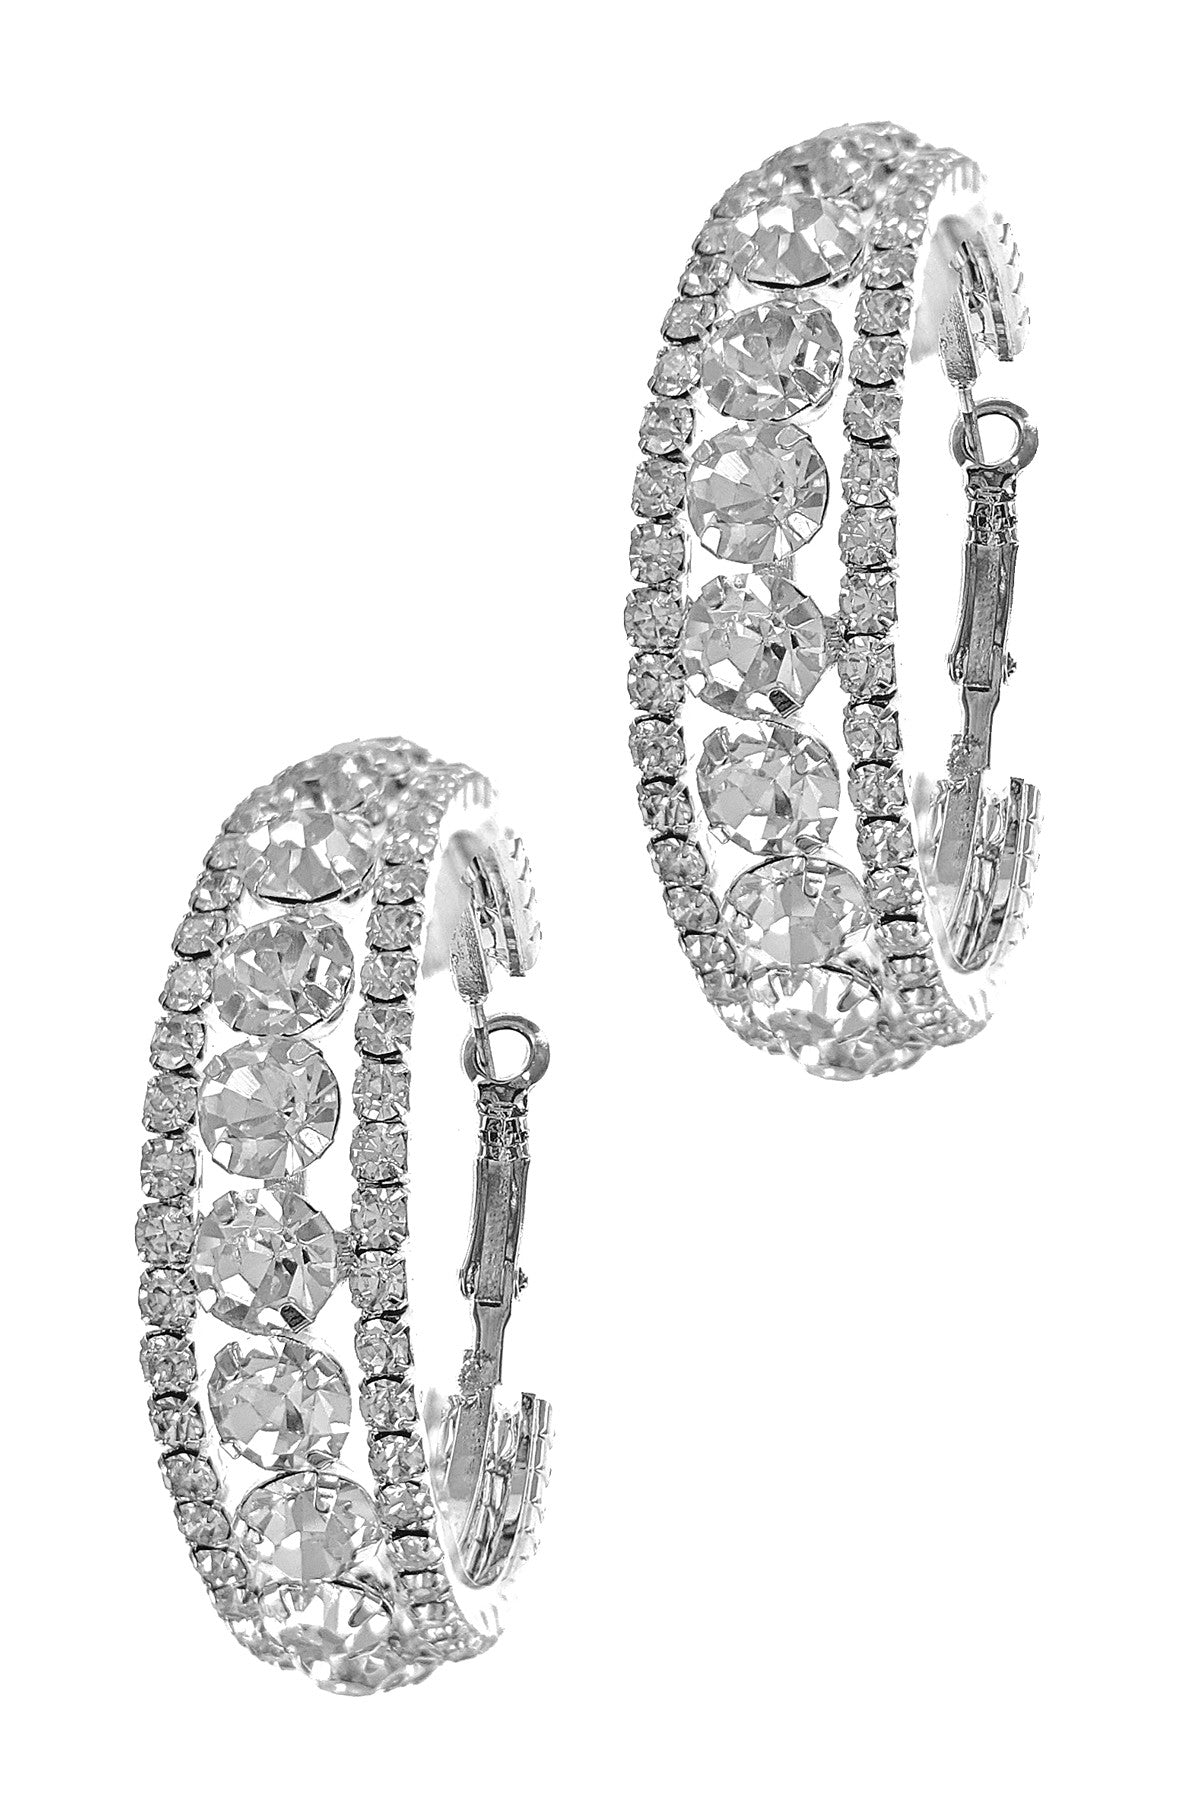 The Rylee Earrings